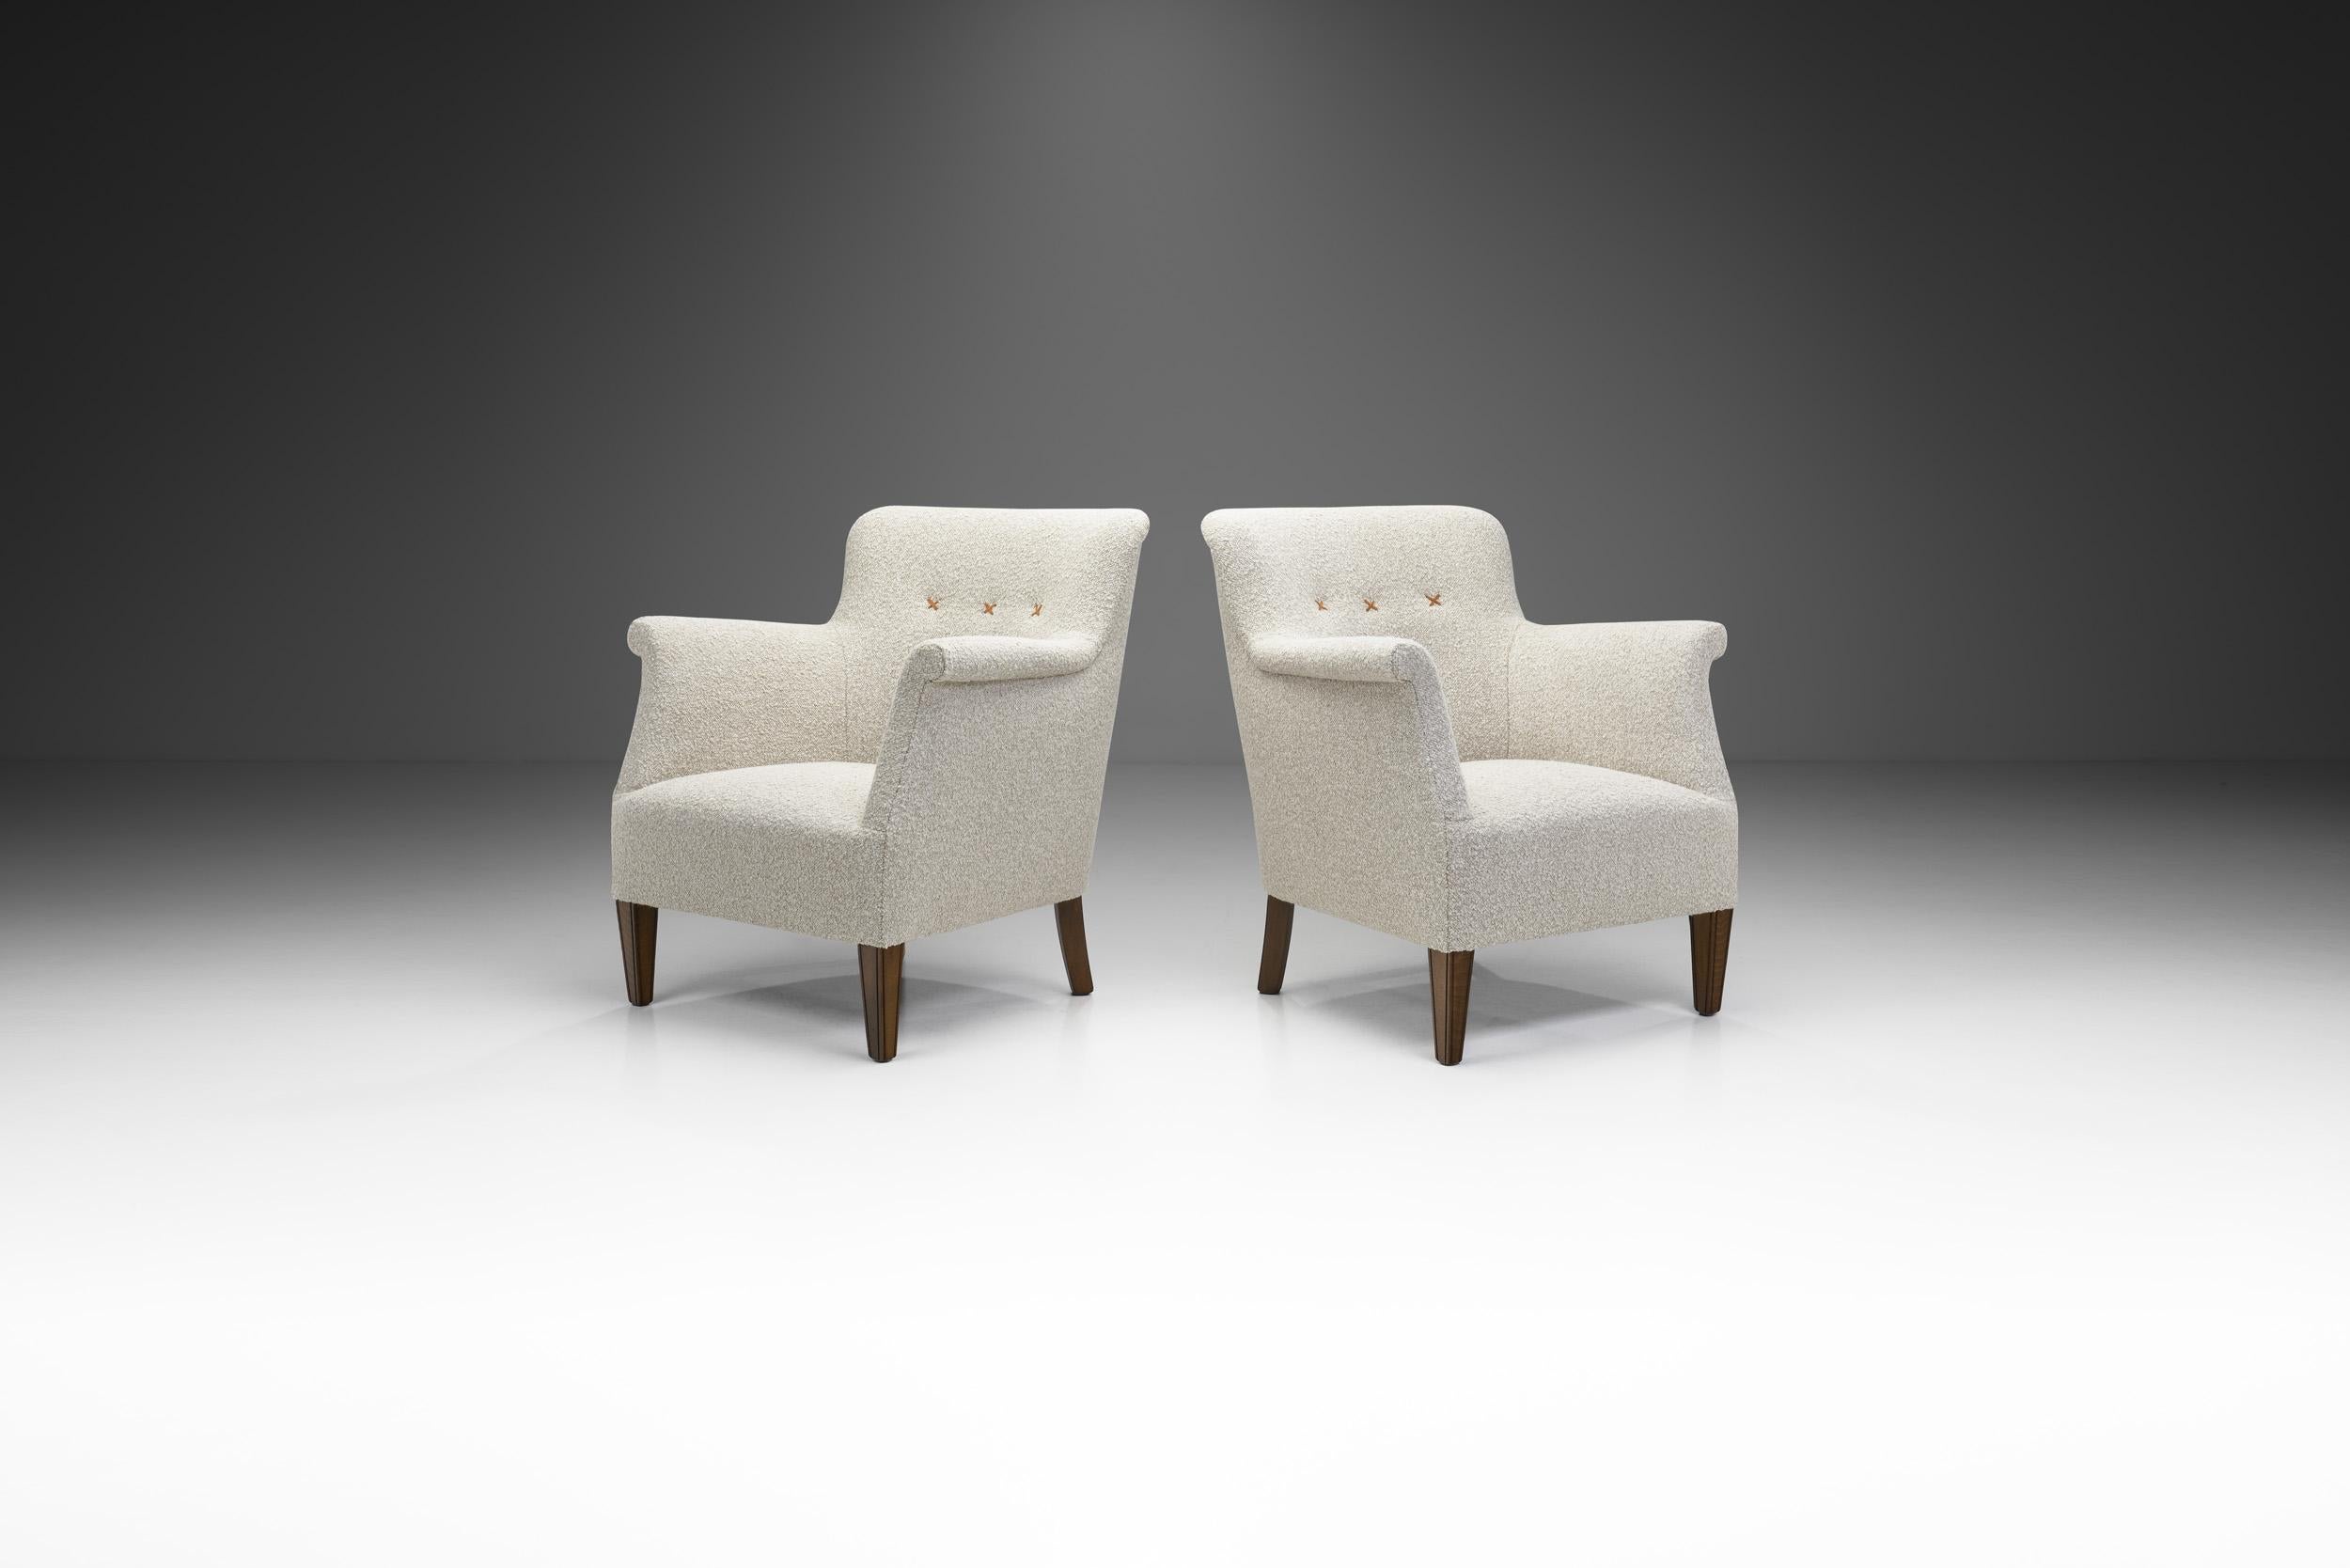 Cette paire de fauteuils de fabrication danoise est caractérisée par les meilleures qualités du design danois du milieu du siècle. De l'esthétique sobre à l'association élégante des matériaux, ces modèles rembourrés sont les parfaits exemples de la